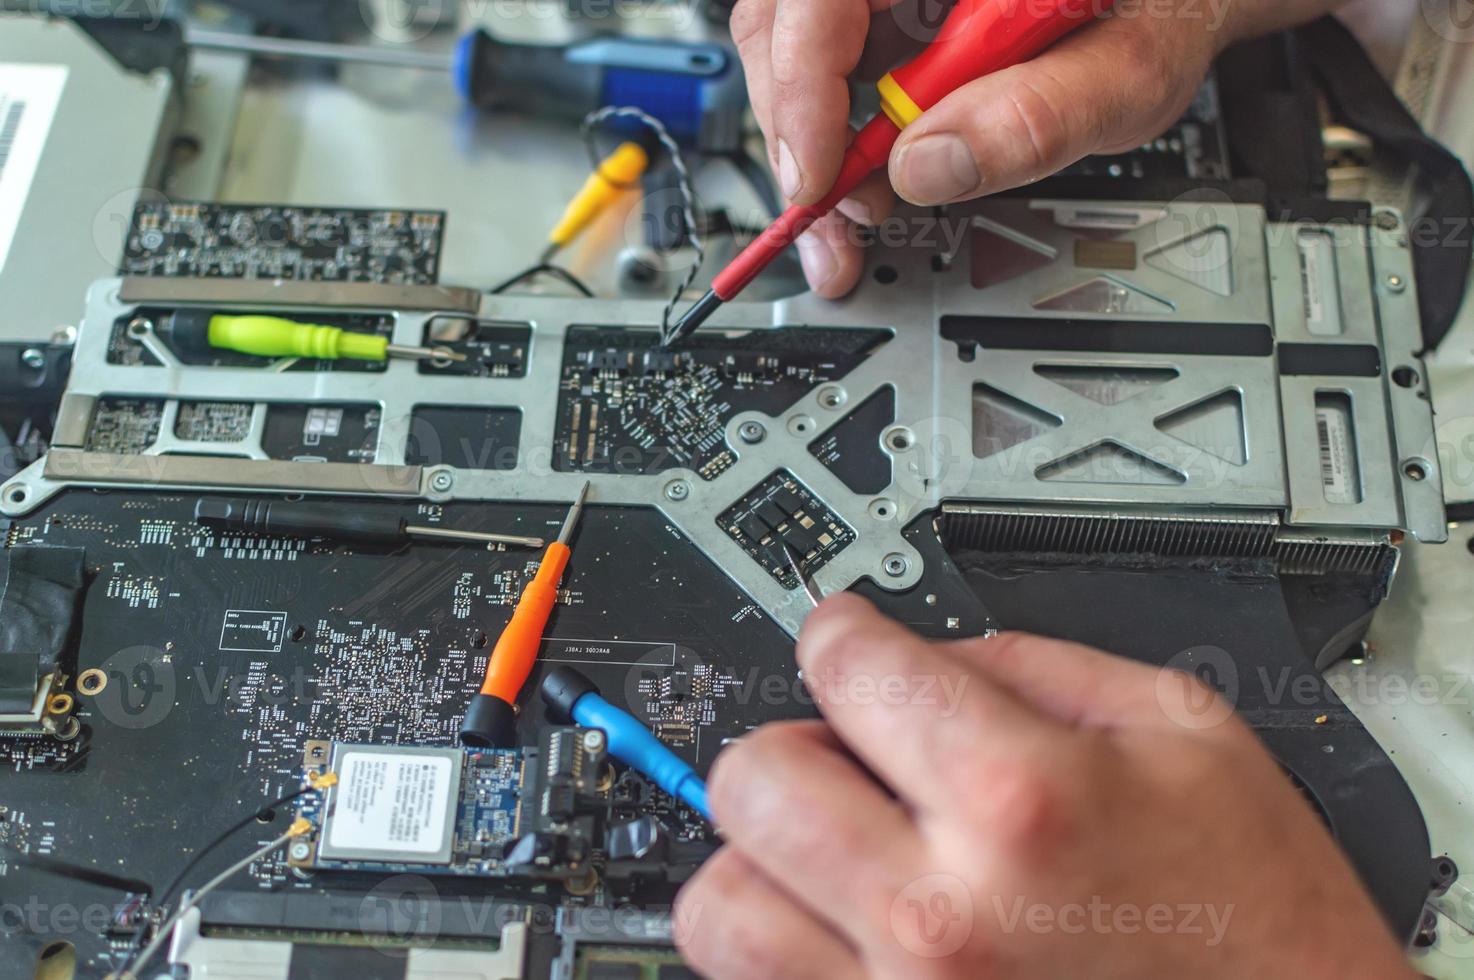 en man reparerar en dator, löder ett kort, reparerar elektronik och modern teknik foto